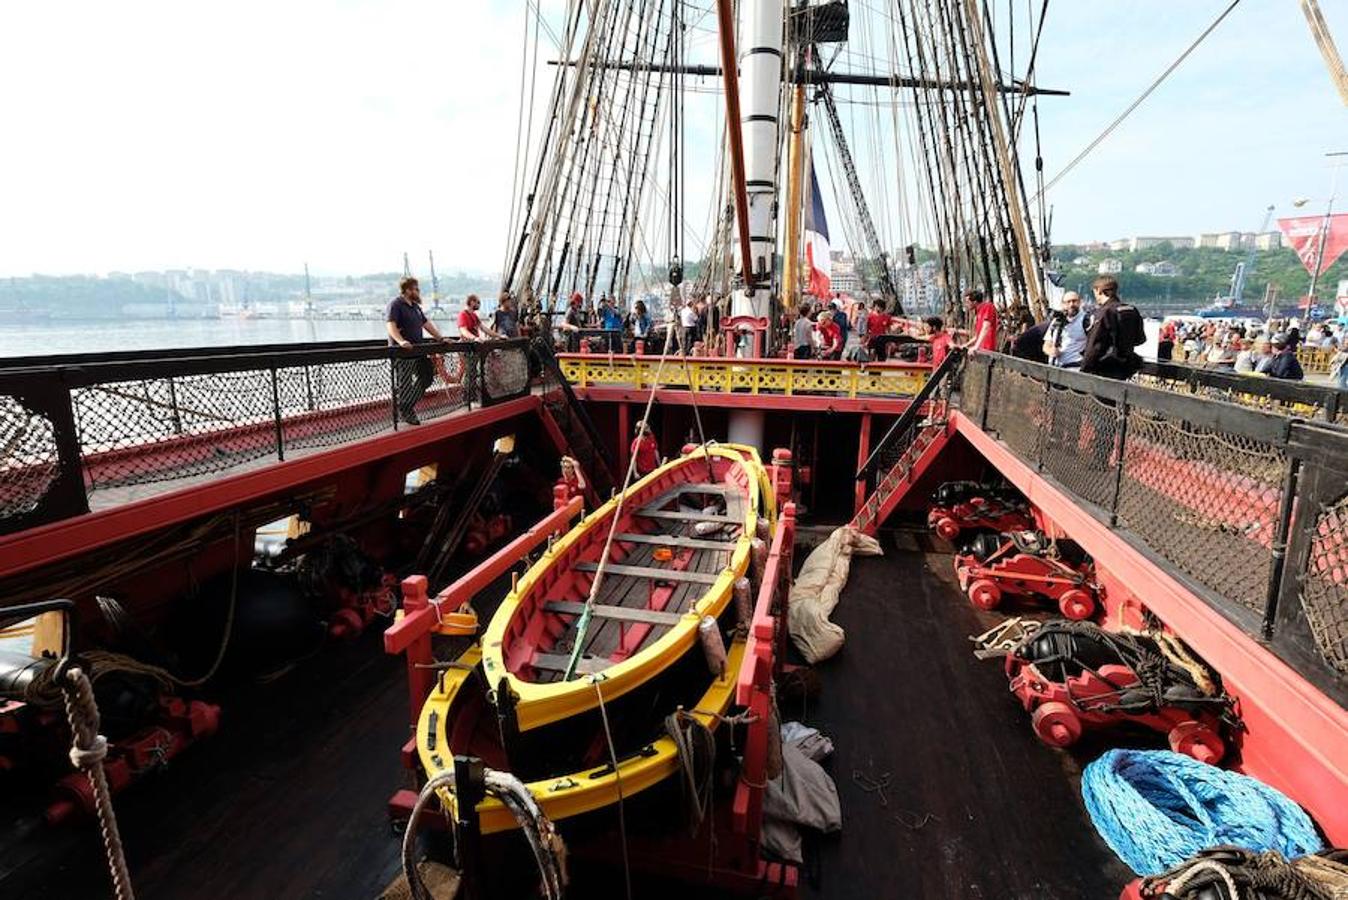 El buque francés construido como una réplica del mítico barco La Fayette del siglo XVIII puede visitarse desde hoy hasta el domingo. 